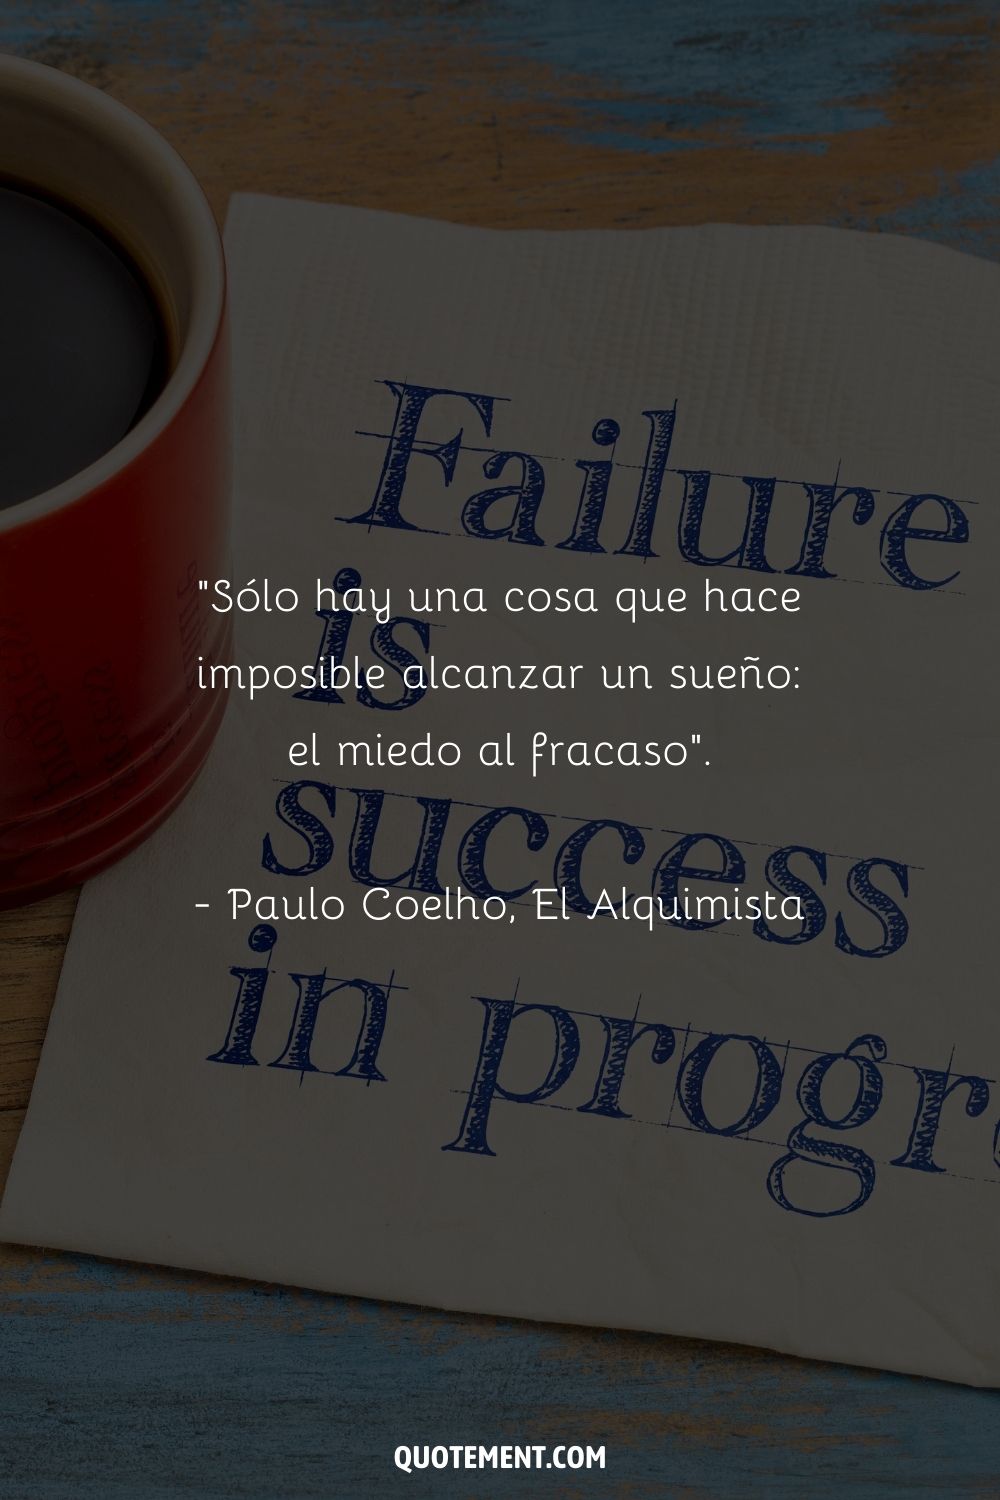 "Sólo hay una cosa que hace imposible alcanzar un sueño: el miedo al fracaso". - Paulo Coelho, El Alquimista